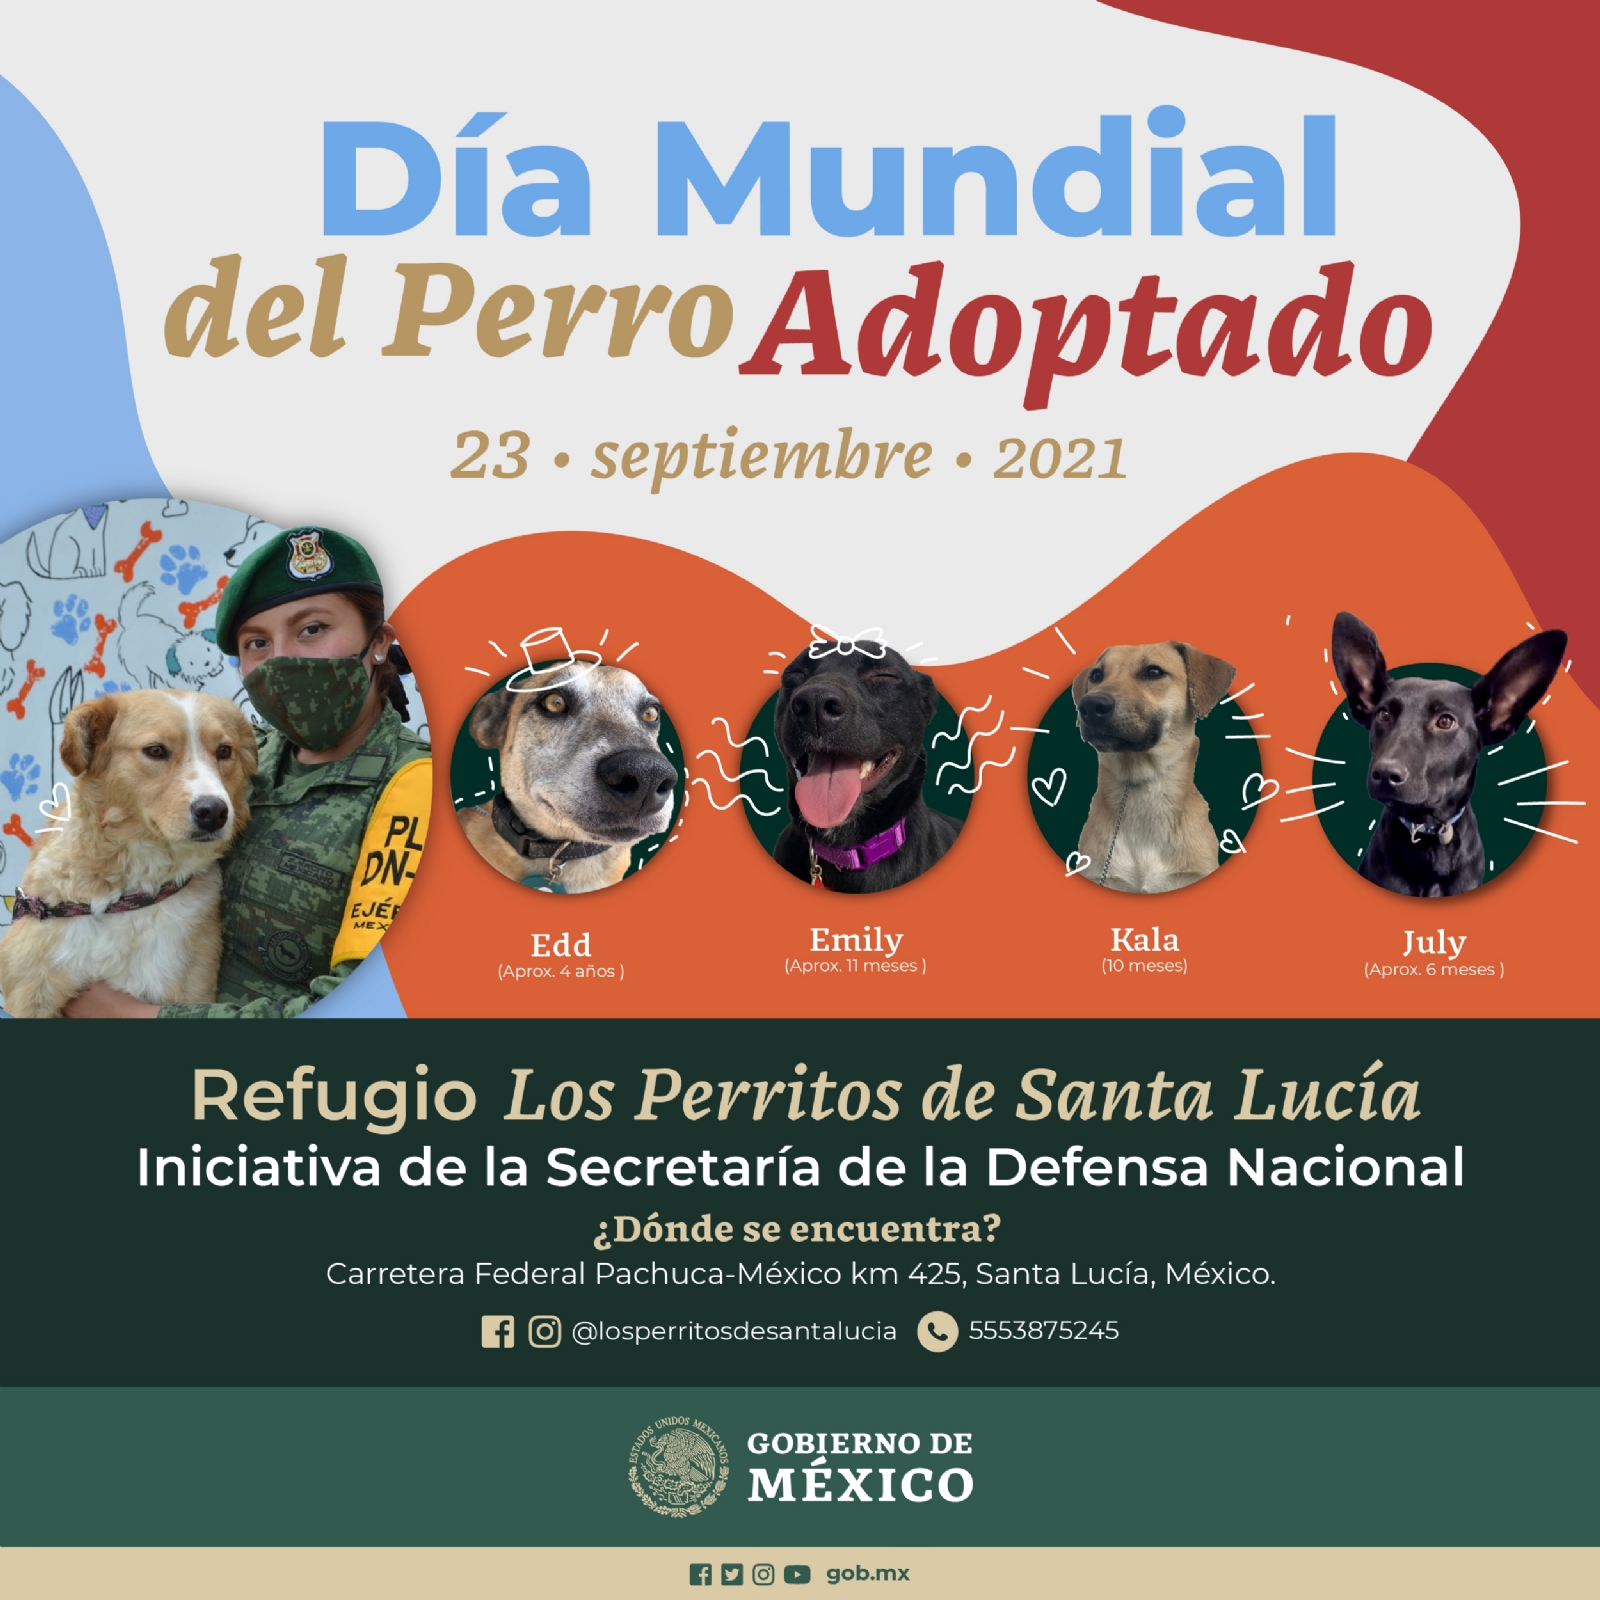 Esta iniciativa plantea rescatar perros que deambulan en las inmediaciones del Aeropuerto Internacional Felipe Ángeles